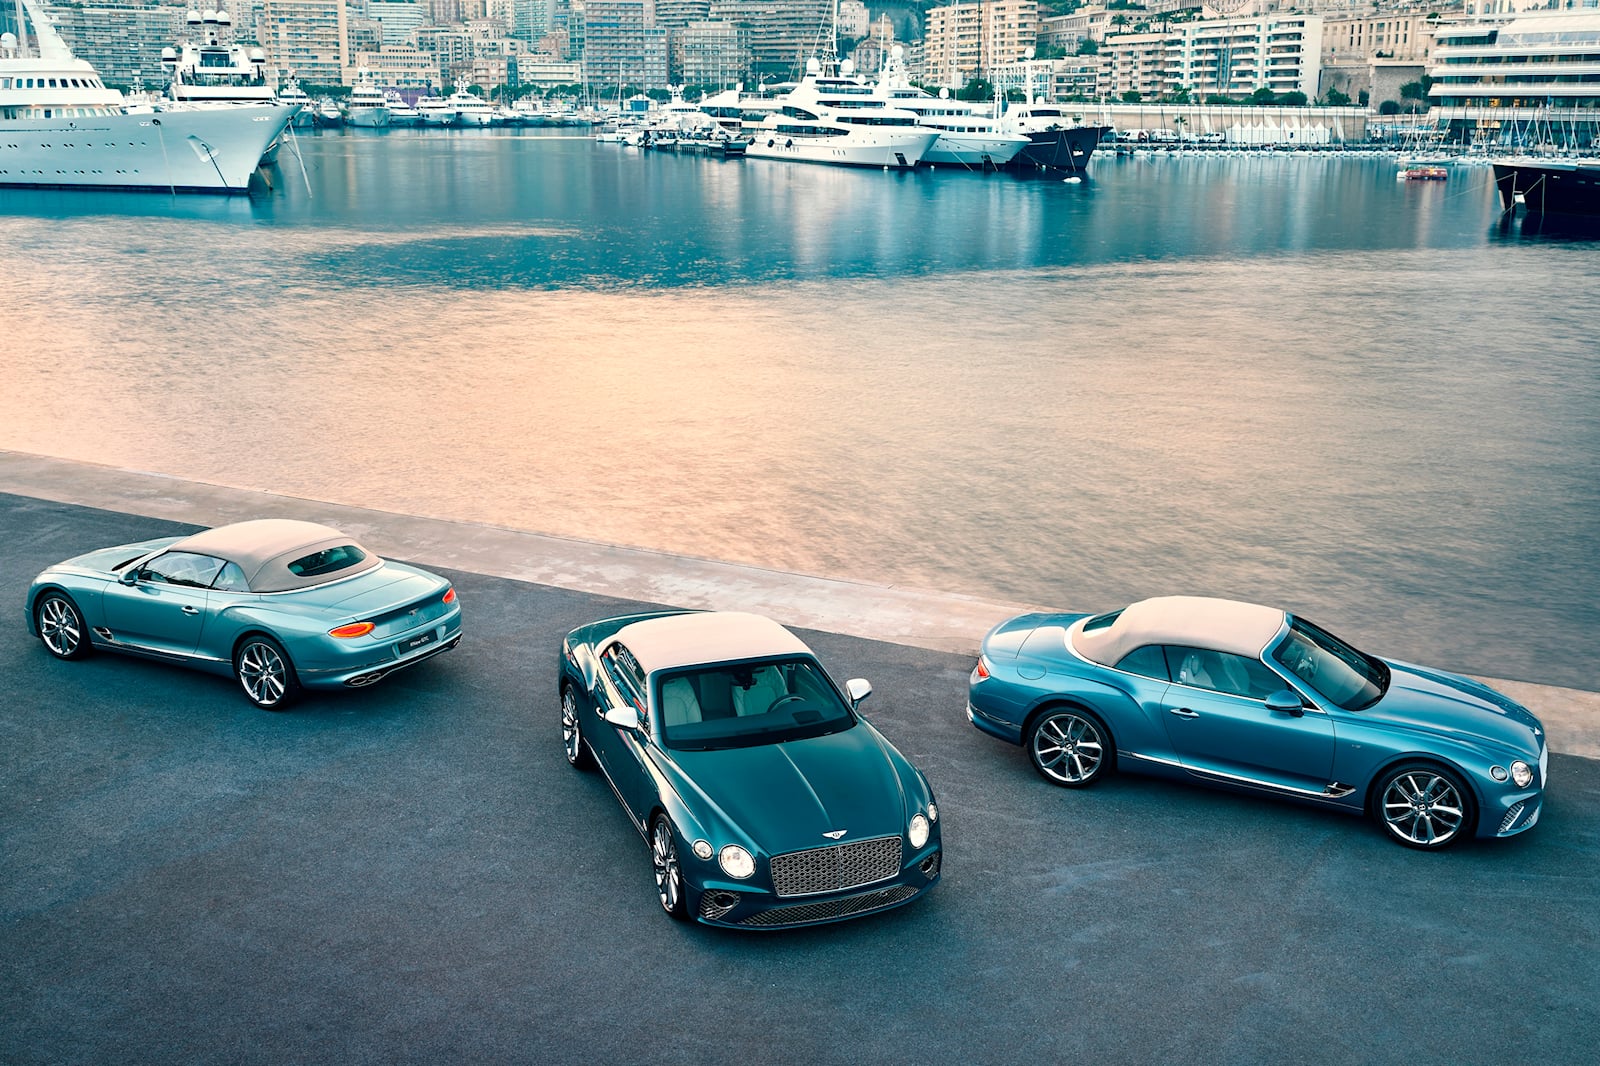 «Коллекция Mulliner Riviera показывает, как Bentley отреагировал на высокий спрос клиентов на персонализацию и индивидуальную эксклюзивность», — сказал Балаш Рооз, региональный директор Bentley Europe. «Понимание Bentley Monaco мира яхтинга, ключевое